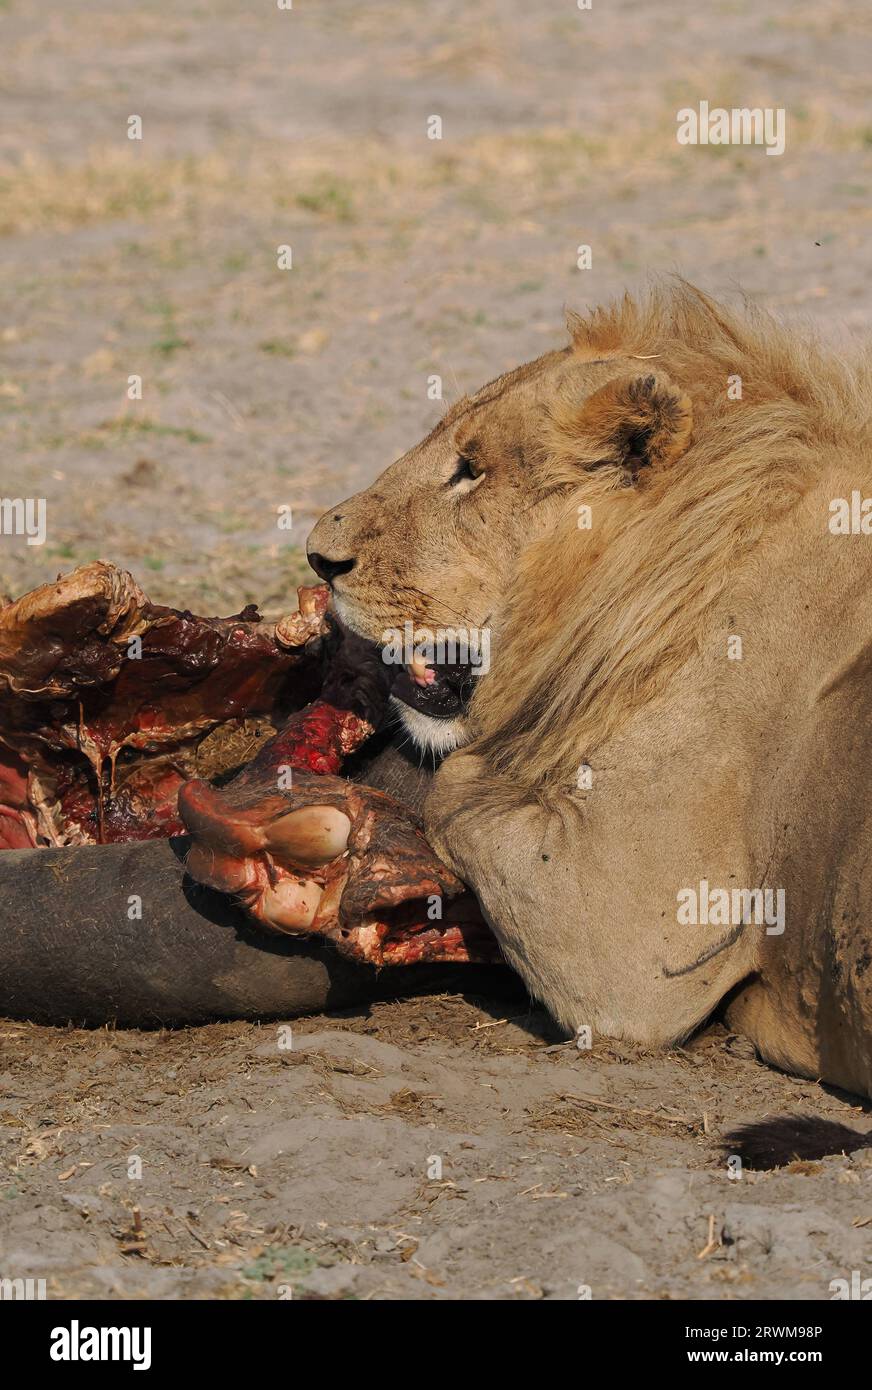 Questo grande orgoglio di leoni aveva ucciso un ippopotamo nella notte. La maggior parte dell'orgoglio aveva mangiato, ma alcuni ancora si godevano. Foto Stock